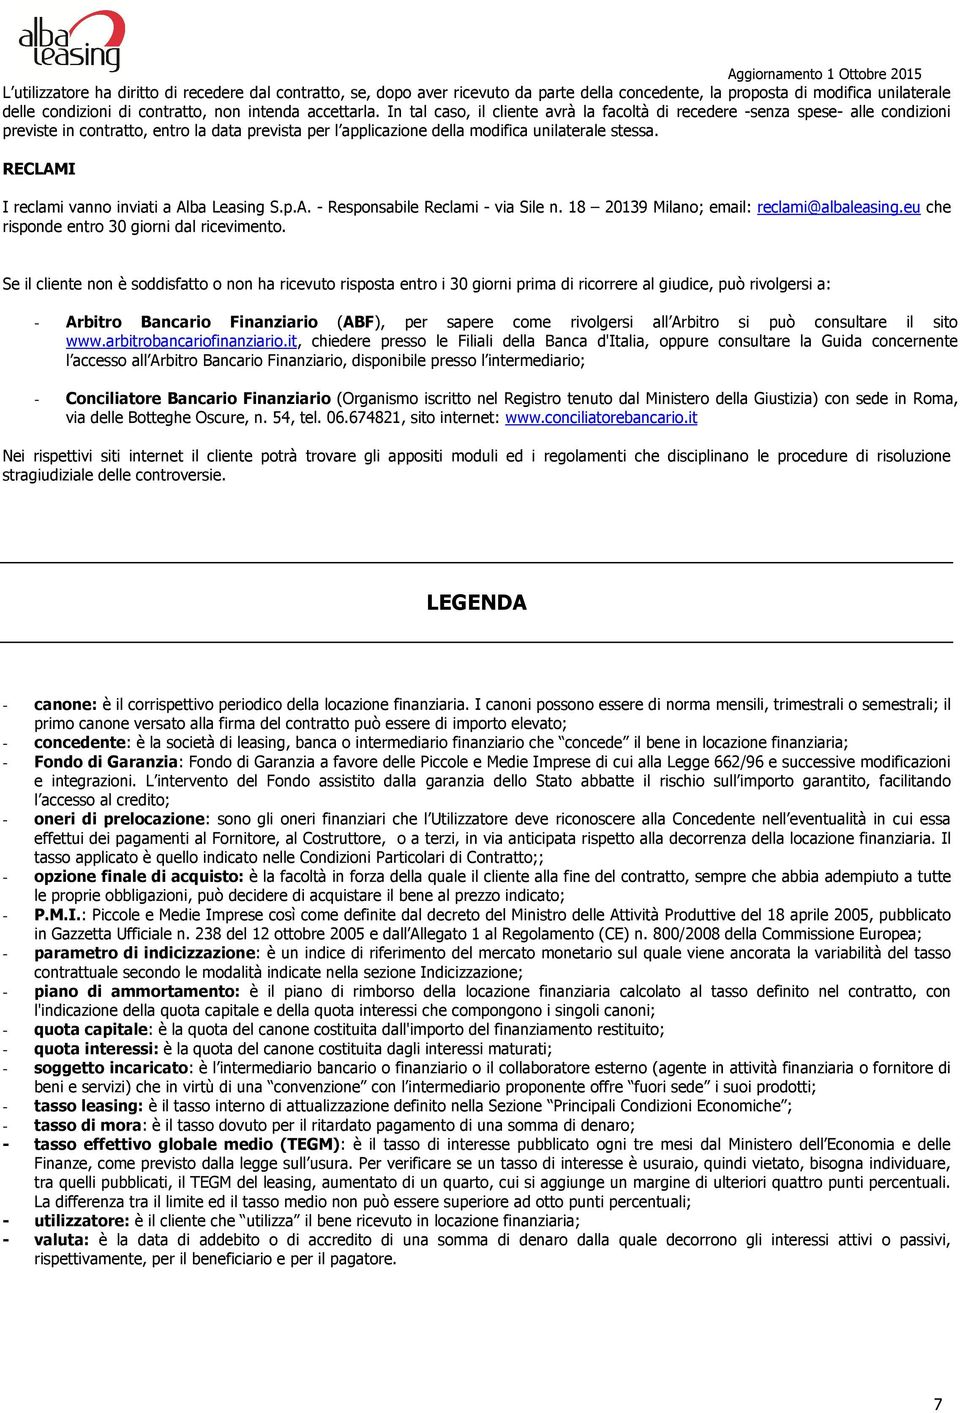 RECLAMI I reclami vanno inviati a Alba Leasing S.p.A. - Responsabile Reclami - via Sile n. 18 20139 Milano; email: reclami@albaleasing.eu che risponde entro 30 giorni dal ricevimento.